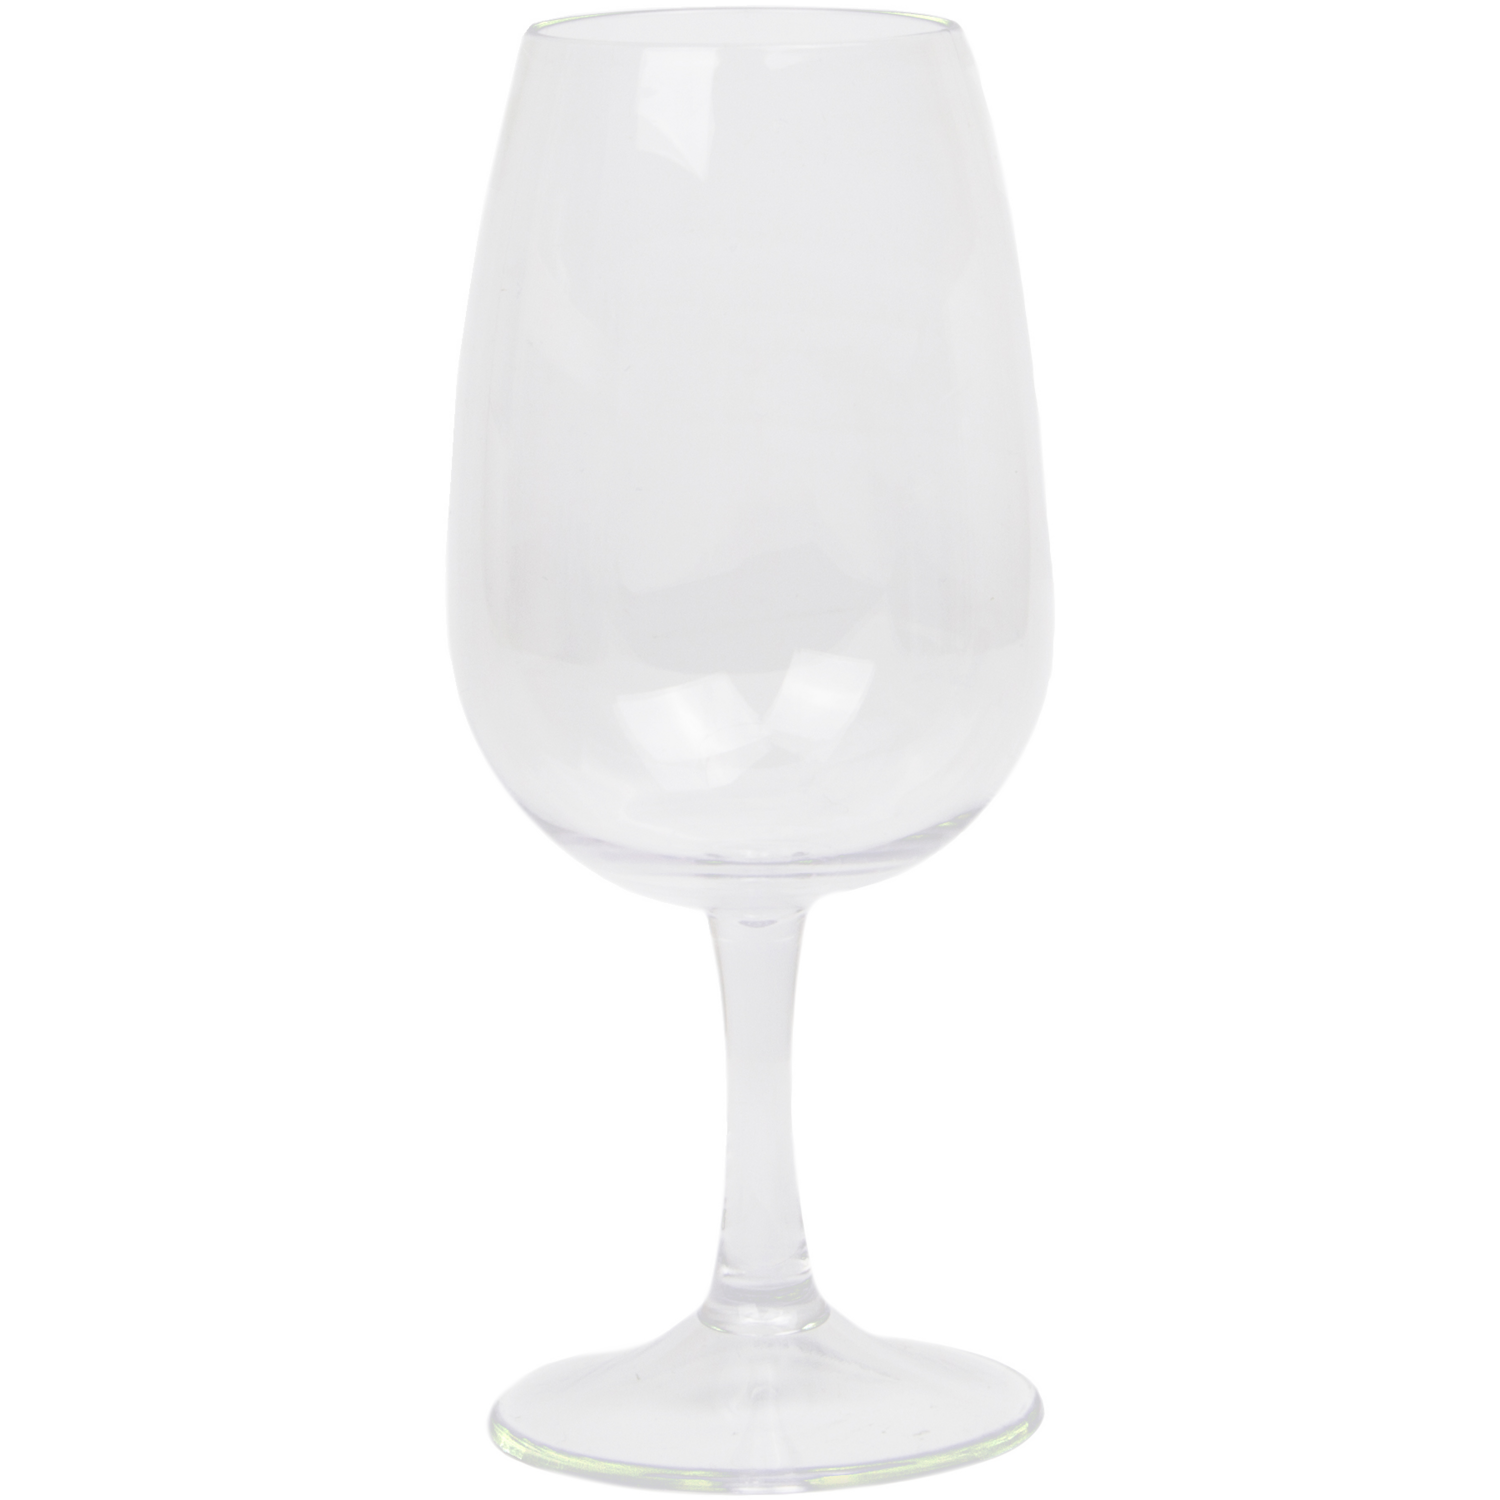 DEPA® Glas, sherryglas, onbreekbaar, gerecycled PET, 225ml, transparant 1